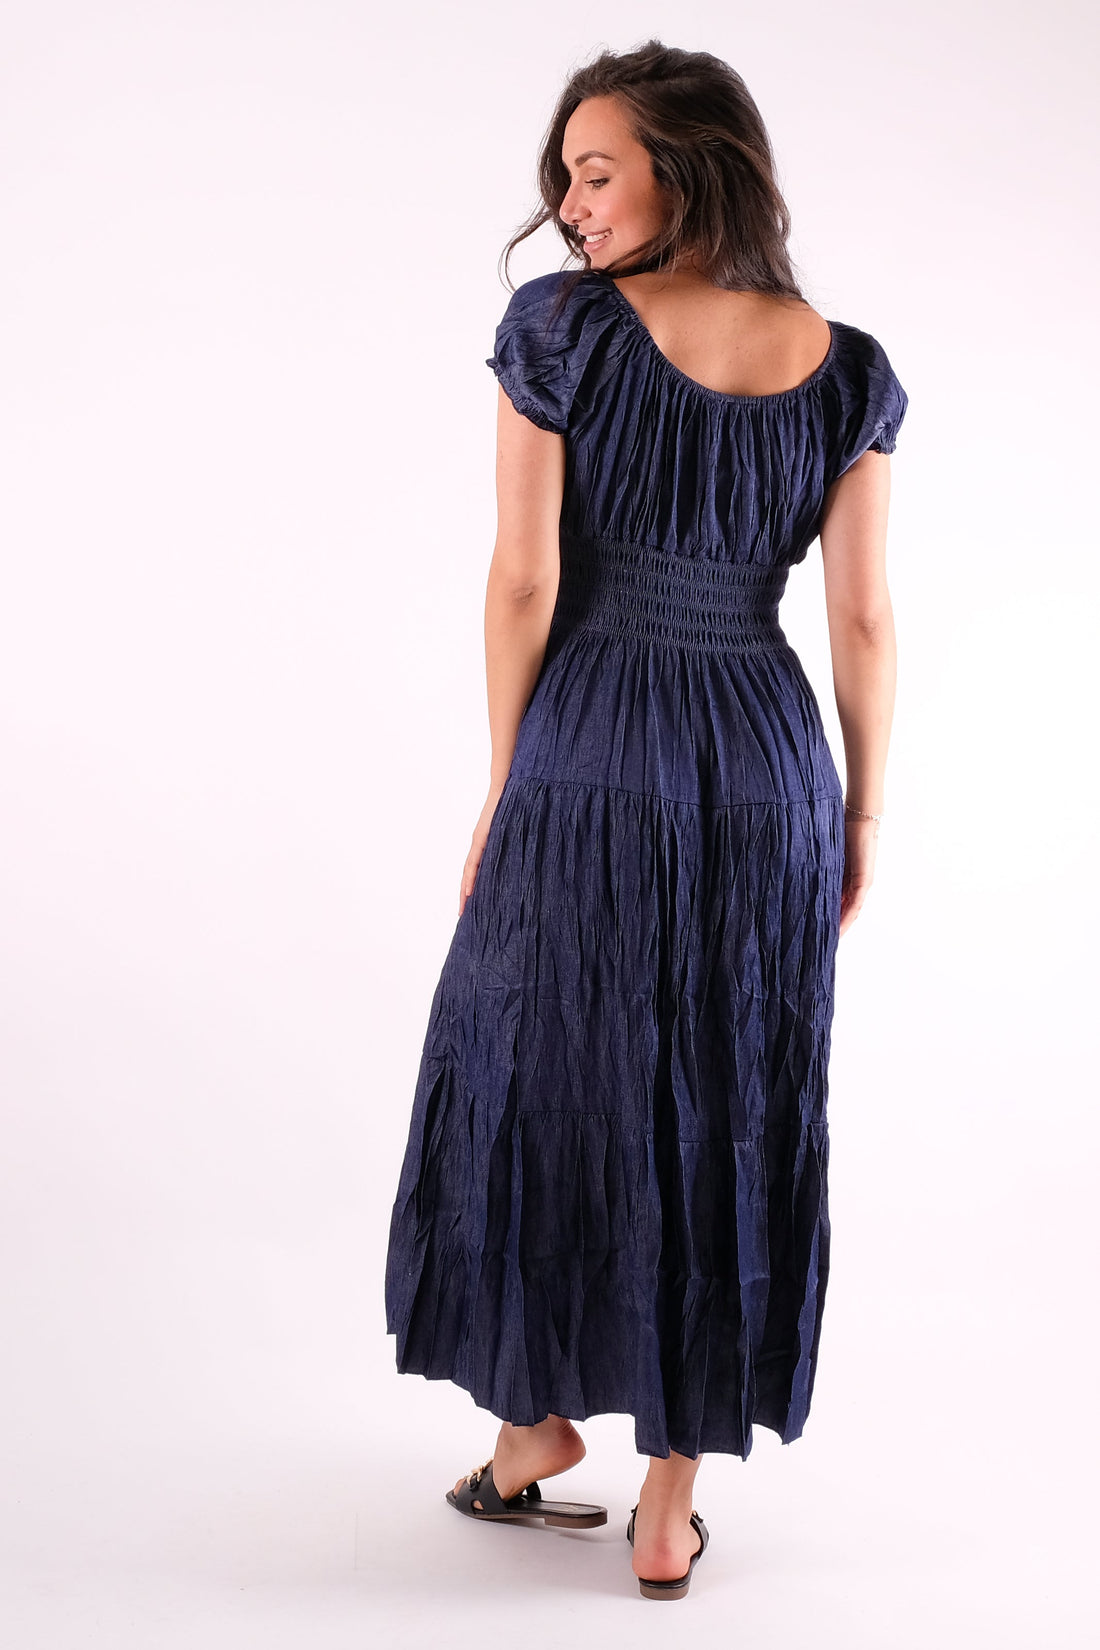 Parrell - Dark Wash Denim Maxi Dress - Pinstripe